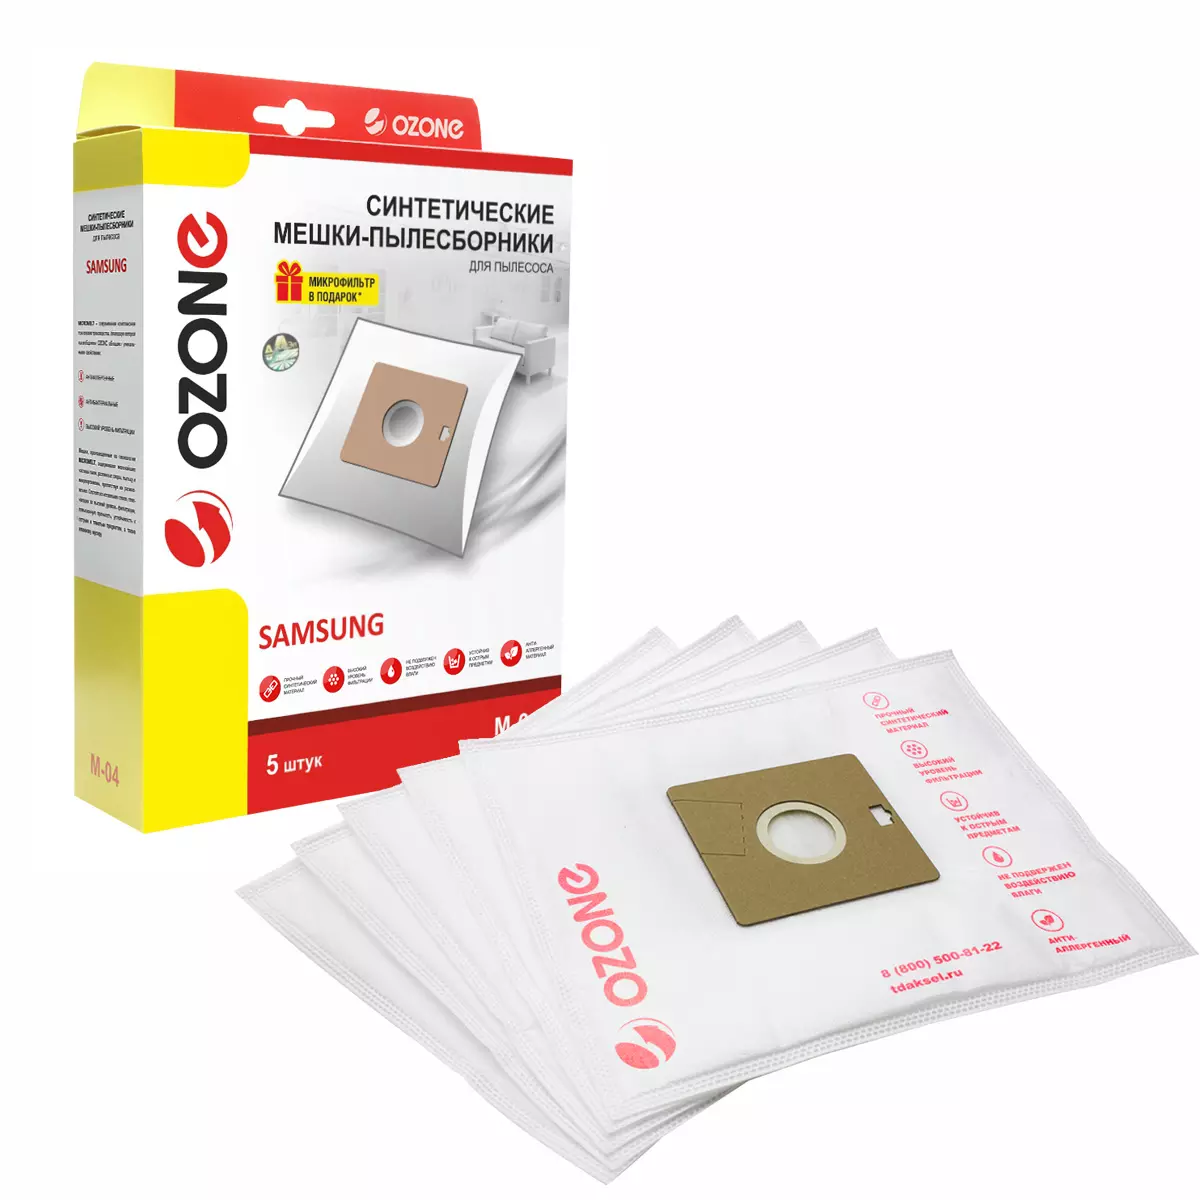 Мешки-пылесборники Ozone M-04 синтетические для пылесоса 5шт+микрофильтр